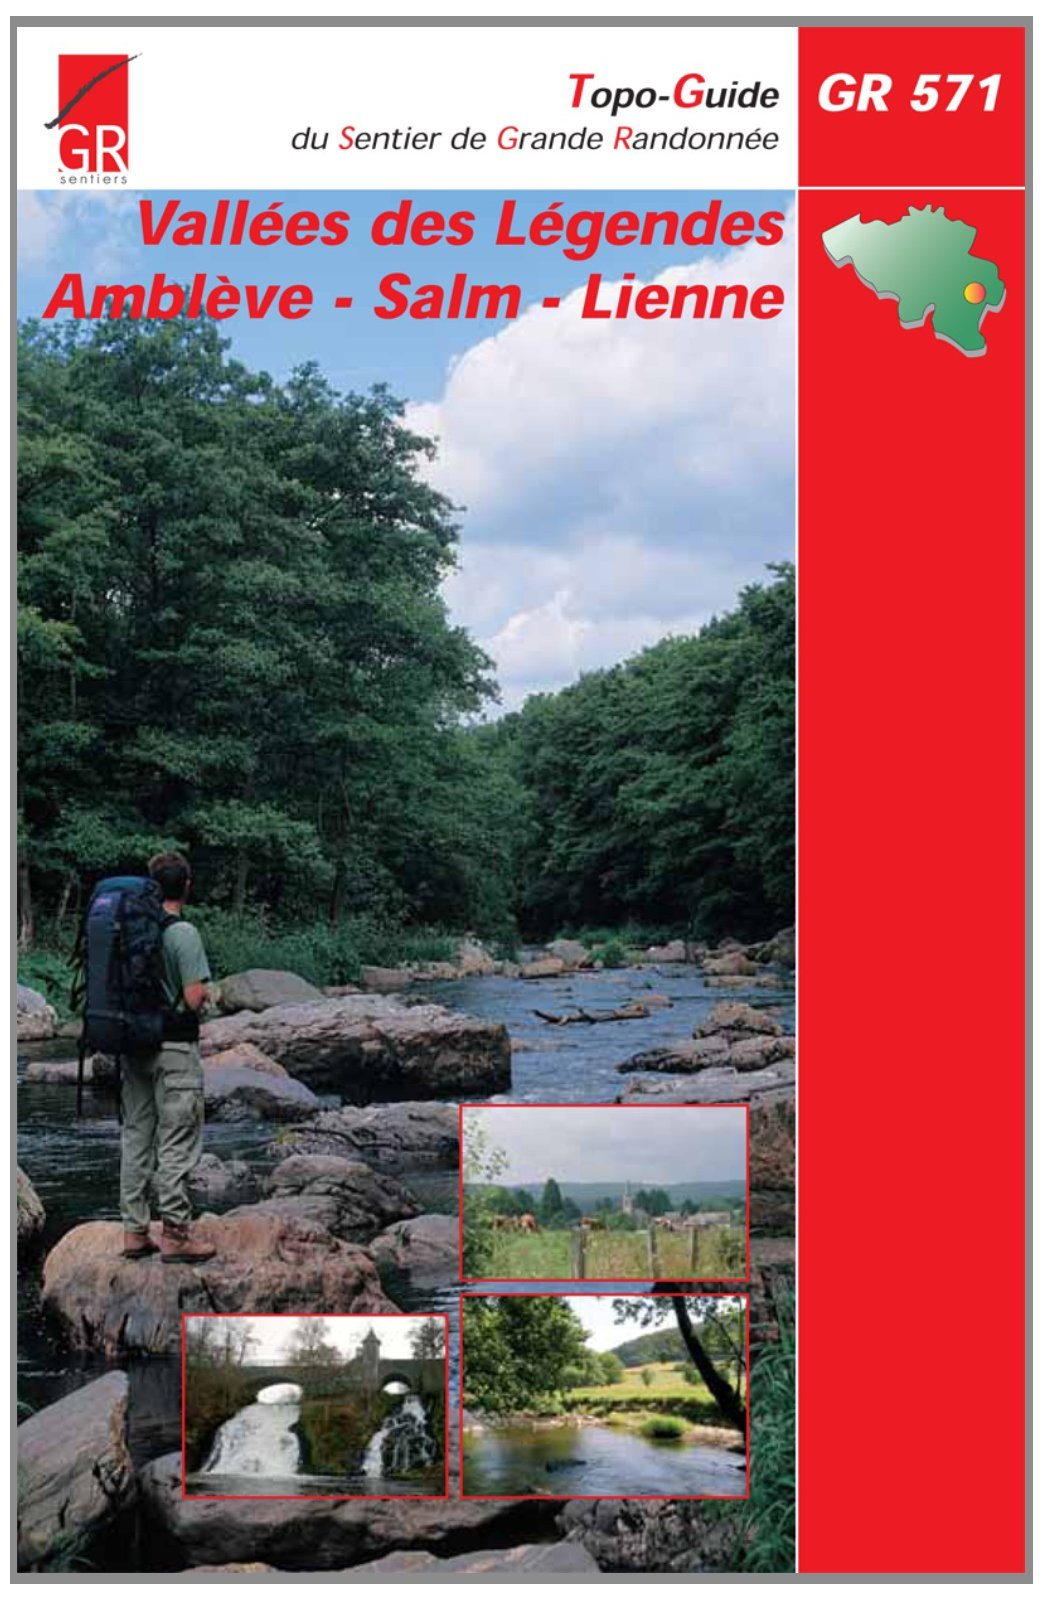 Vallées des Légendes GR571 Amblève-Salm-Lienne